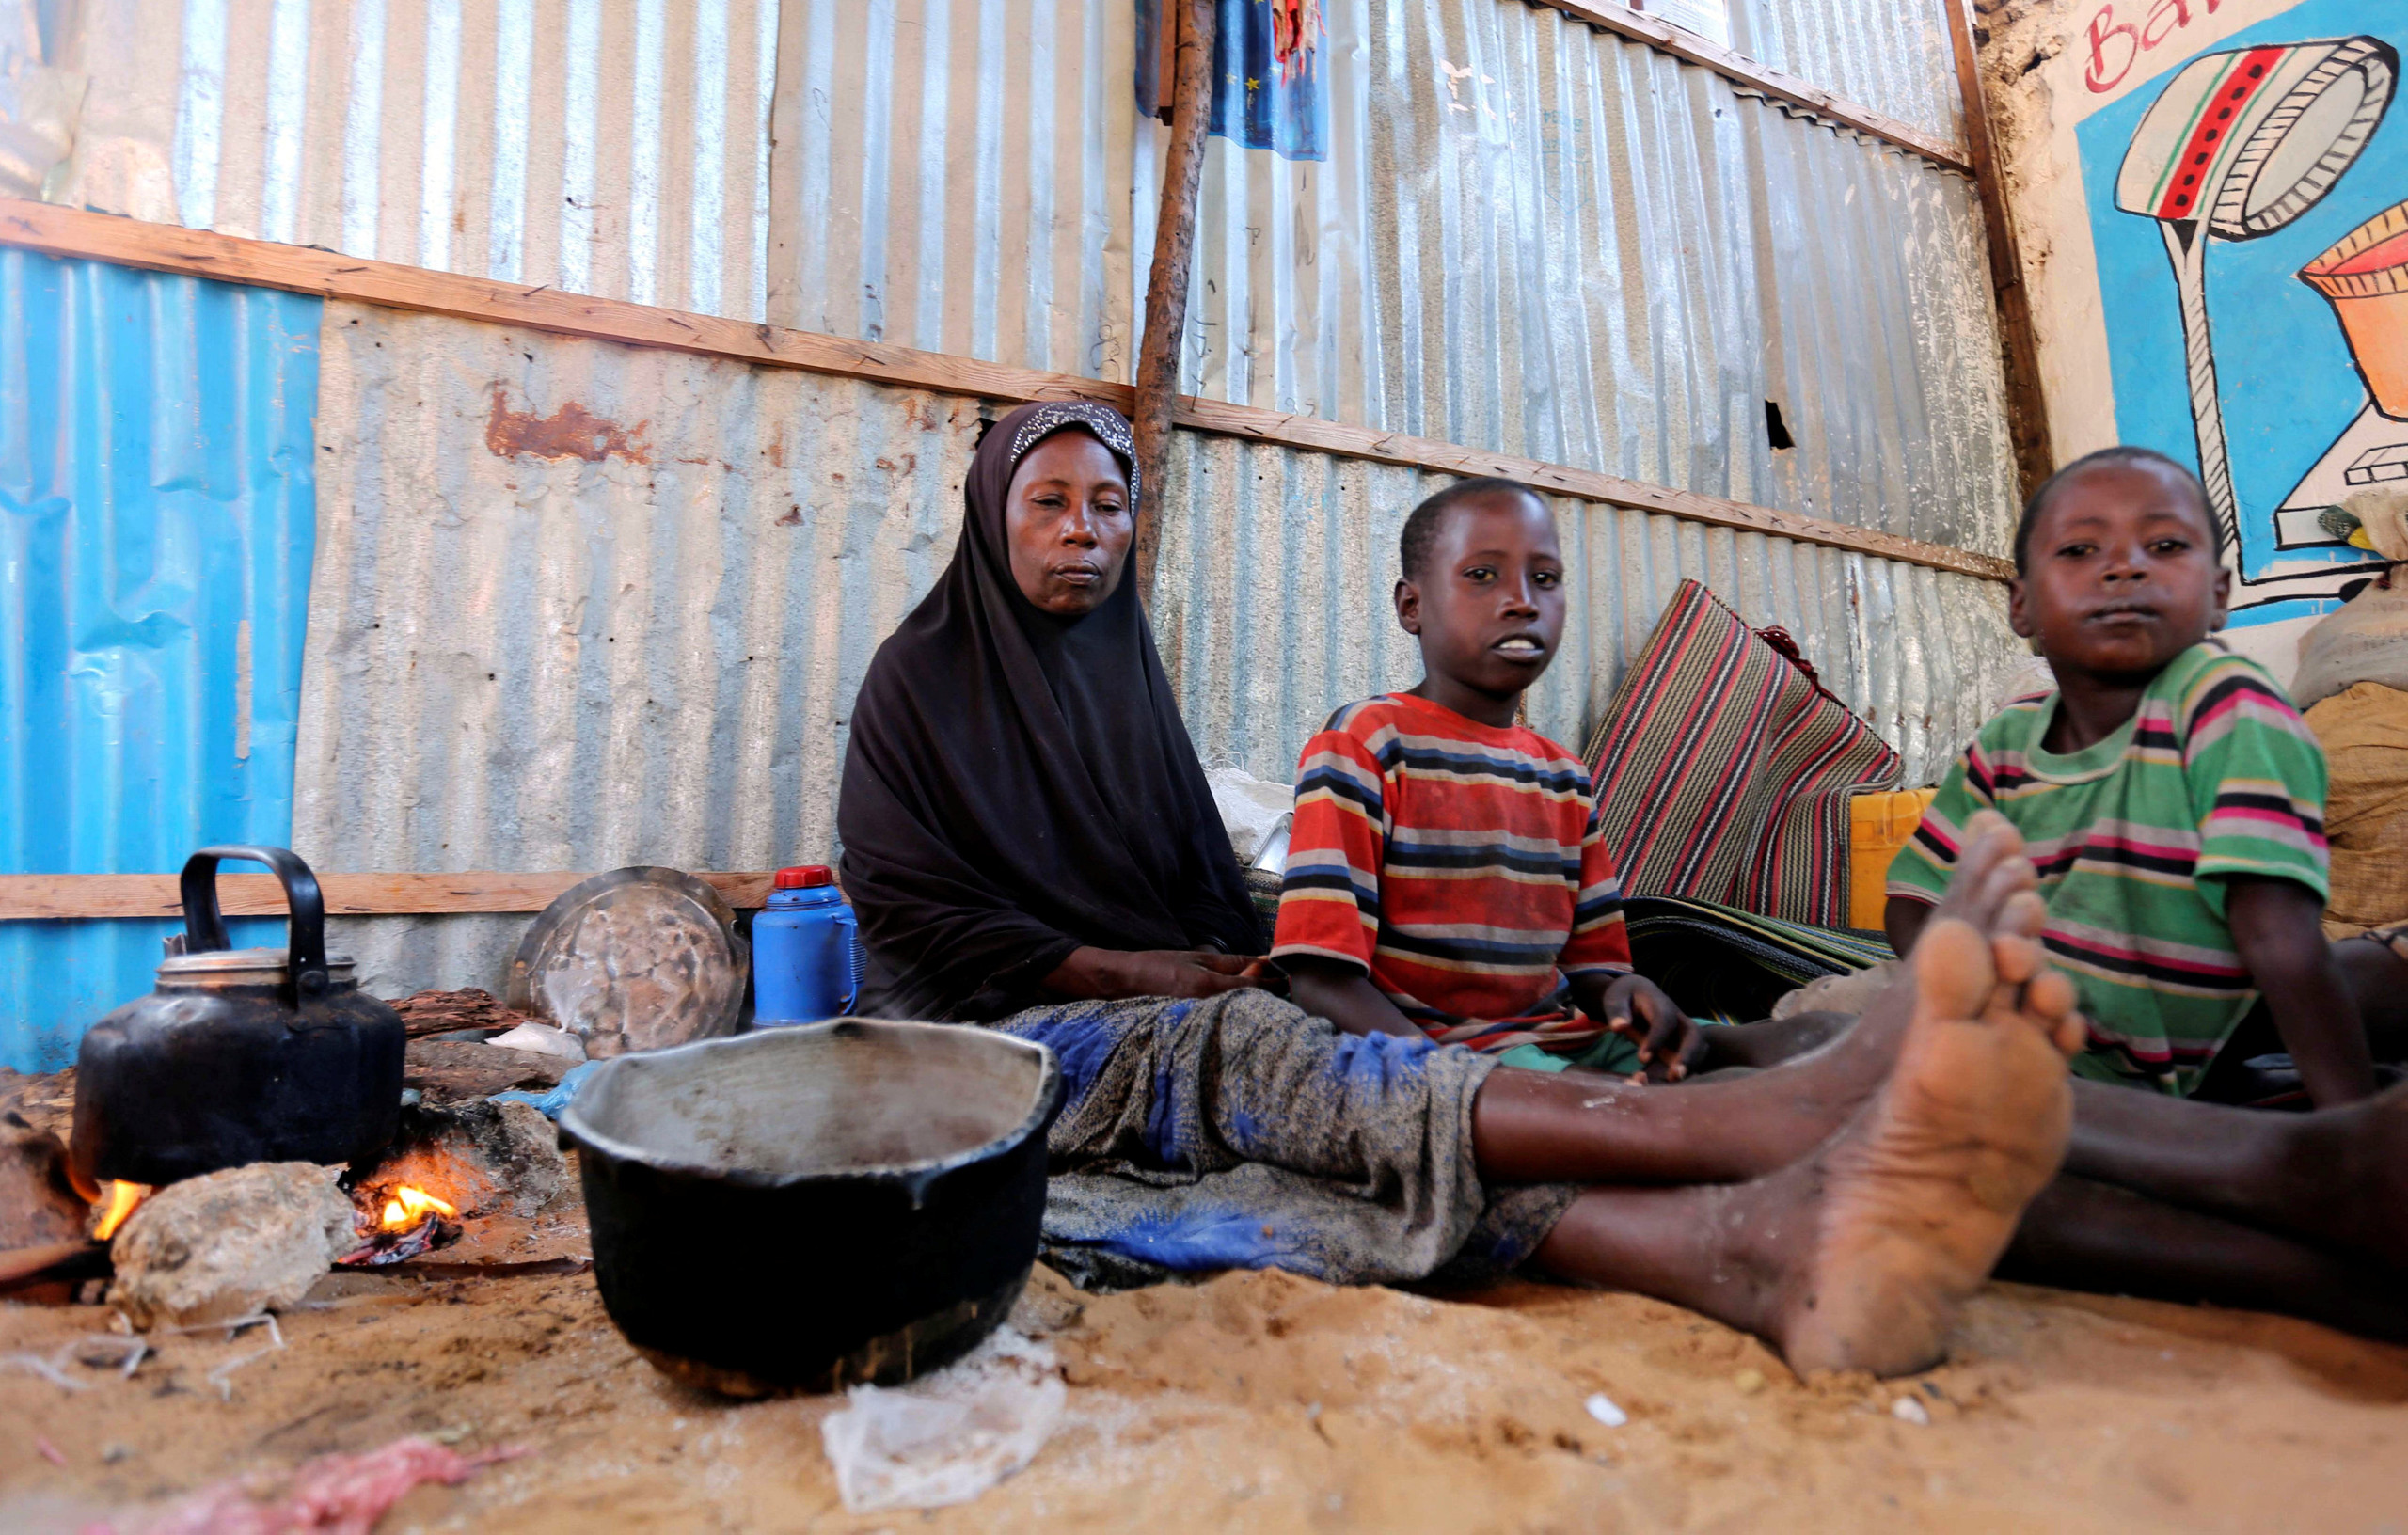 الأمم المتحدة: الصومال يمر “بحالة طوارئ كارثية”